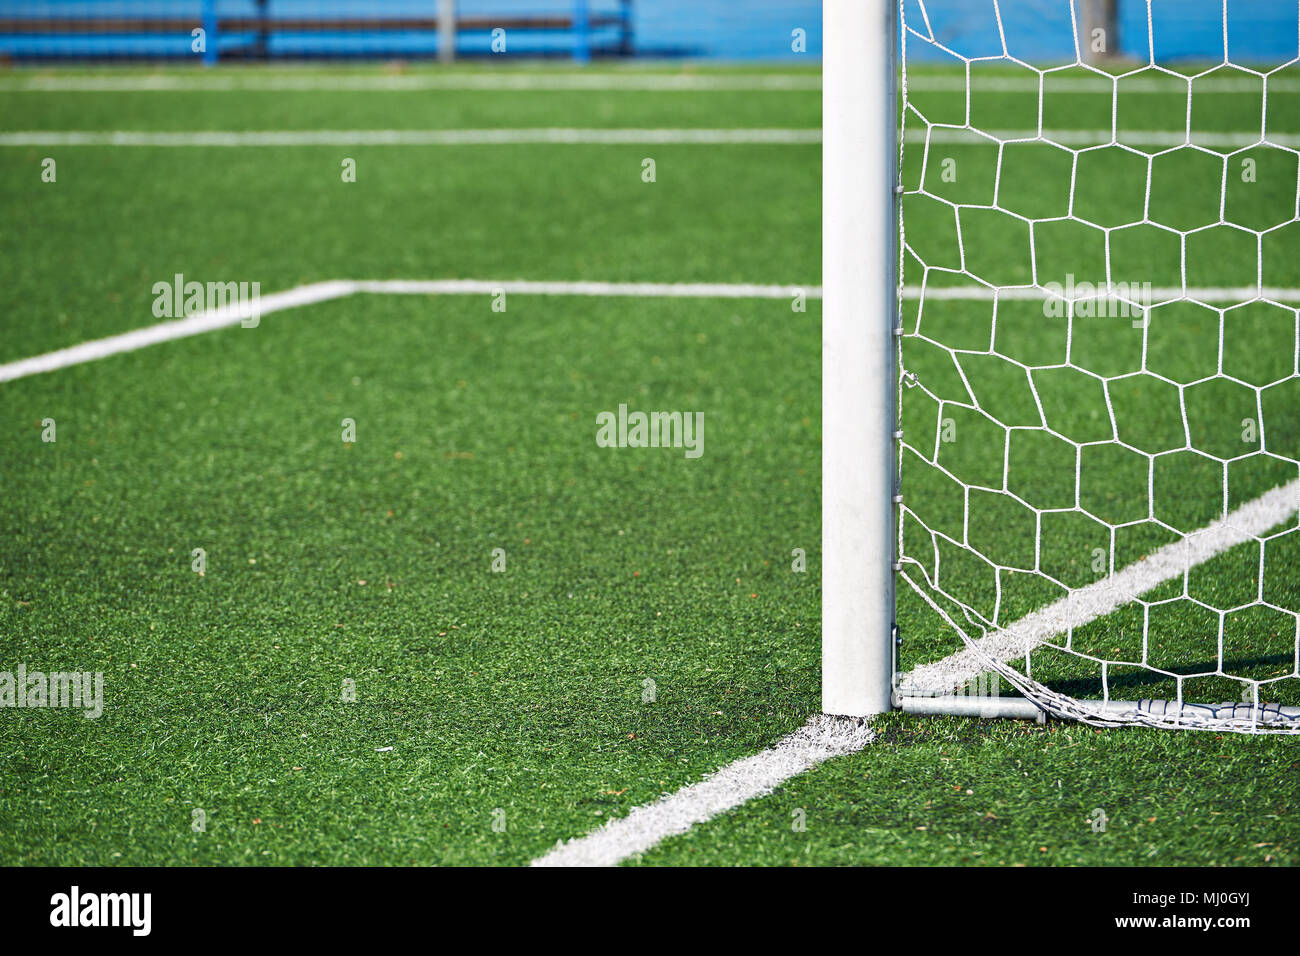 Poteau de but sur un terrain de football avec une pelouse artificielle Banque D'Images